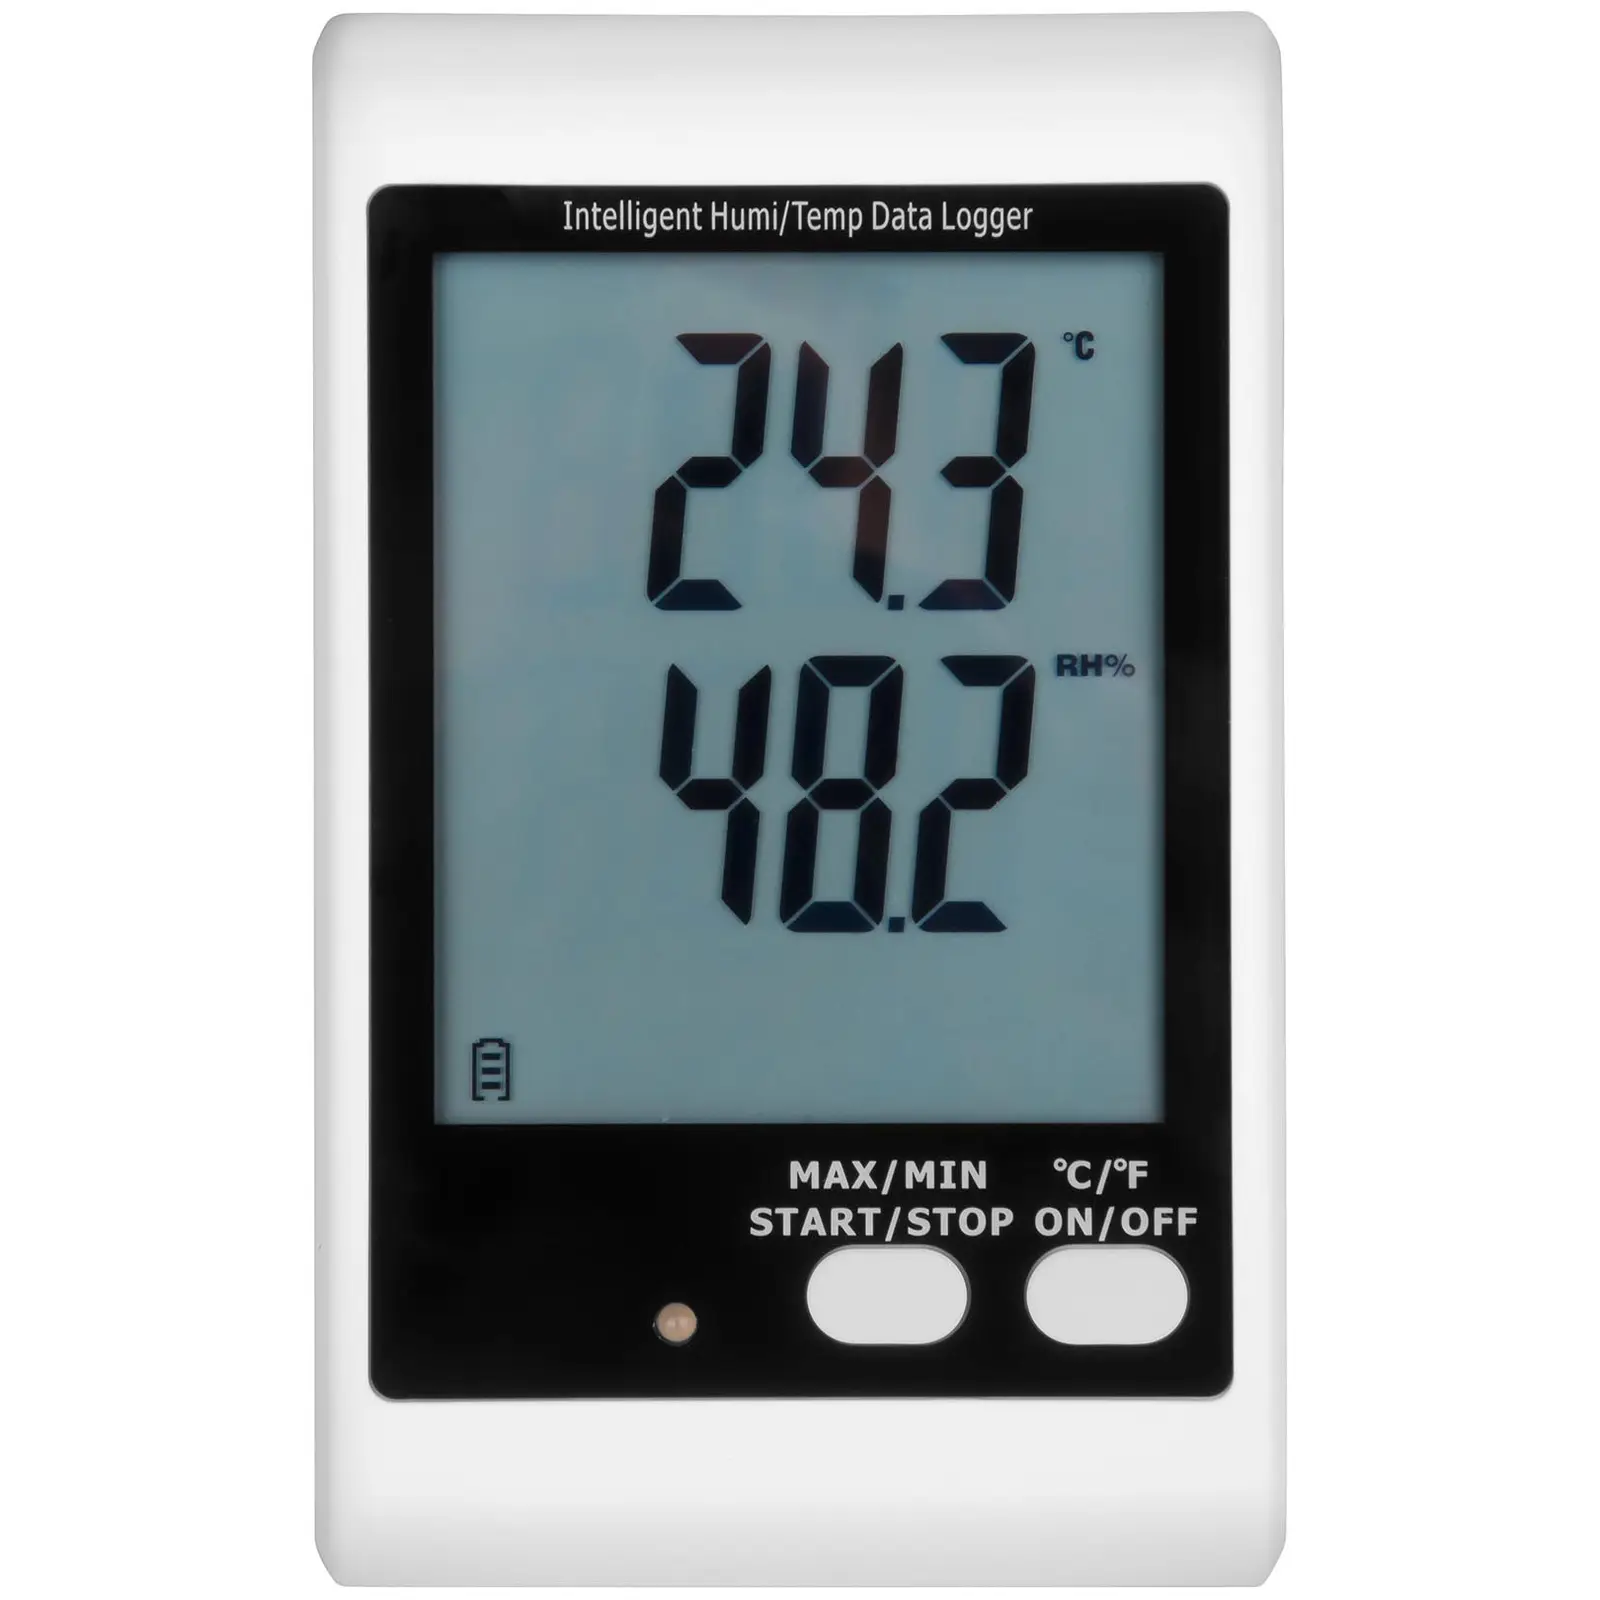 Enregistreur de données - écran LCD - température + humidité de l’air